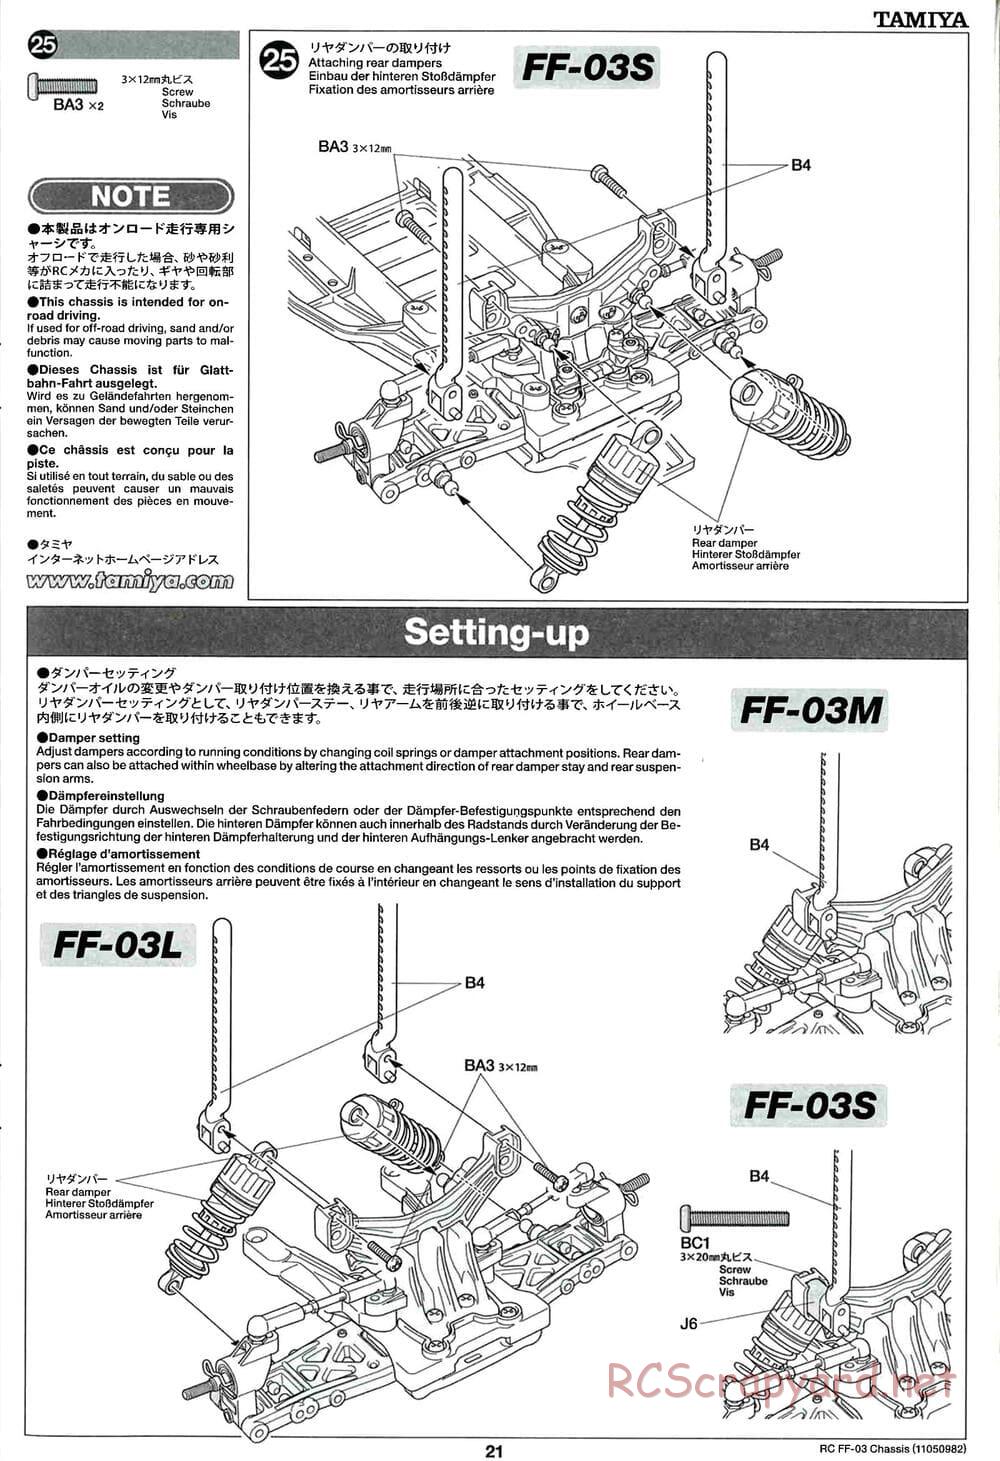 Tamiya - Honda CR-Z - FF-03 Chassis - Manual - Page 21